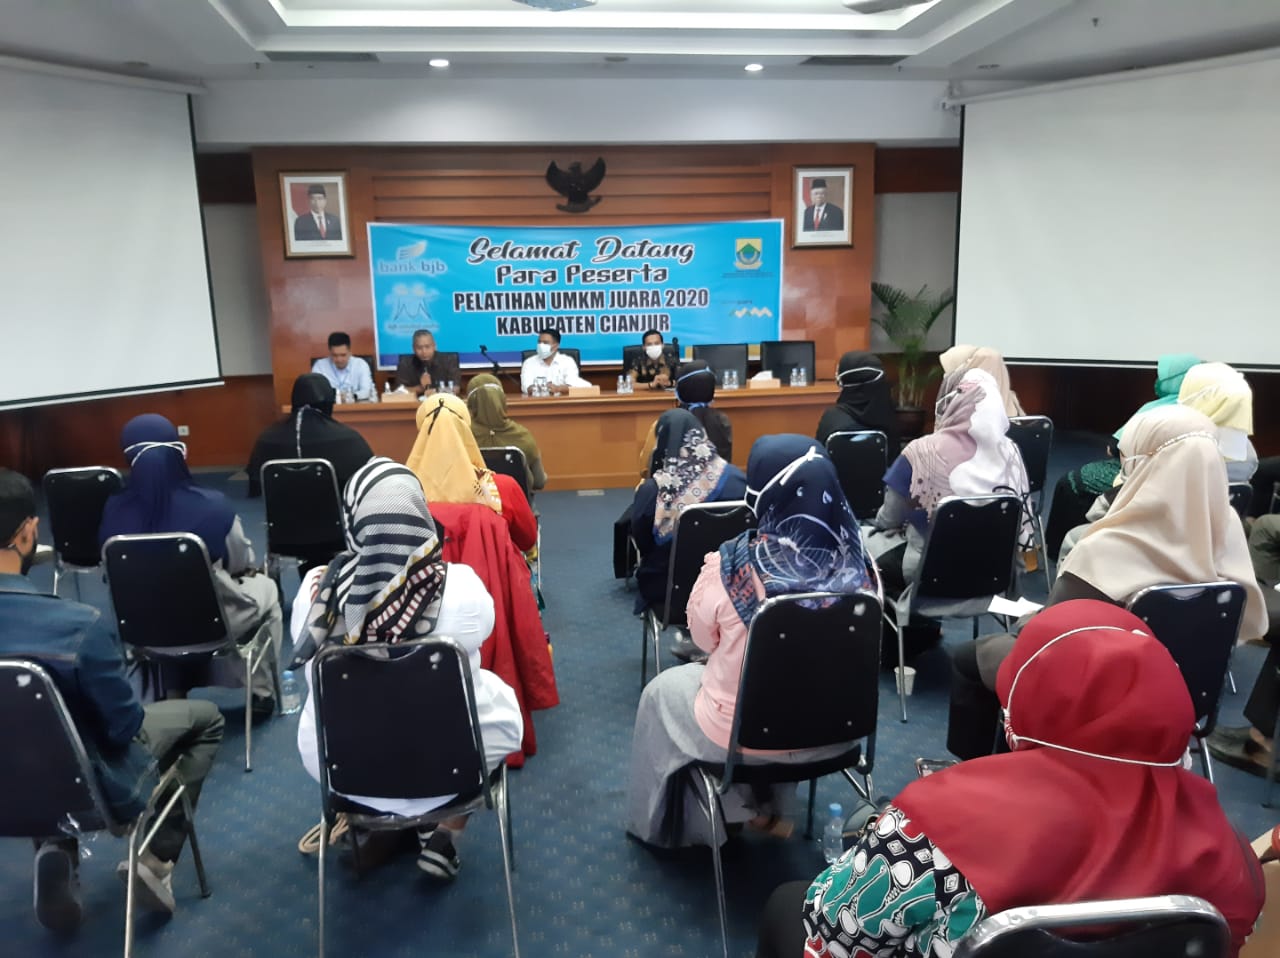  Kolaborasi Bersama Pemerintah, bank bjb Hadirkan UMKM Juara di Cianjur